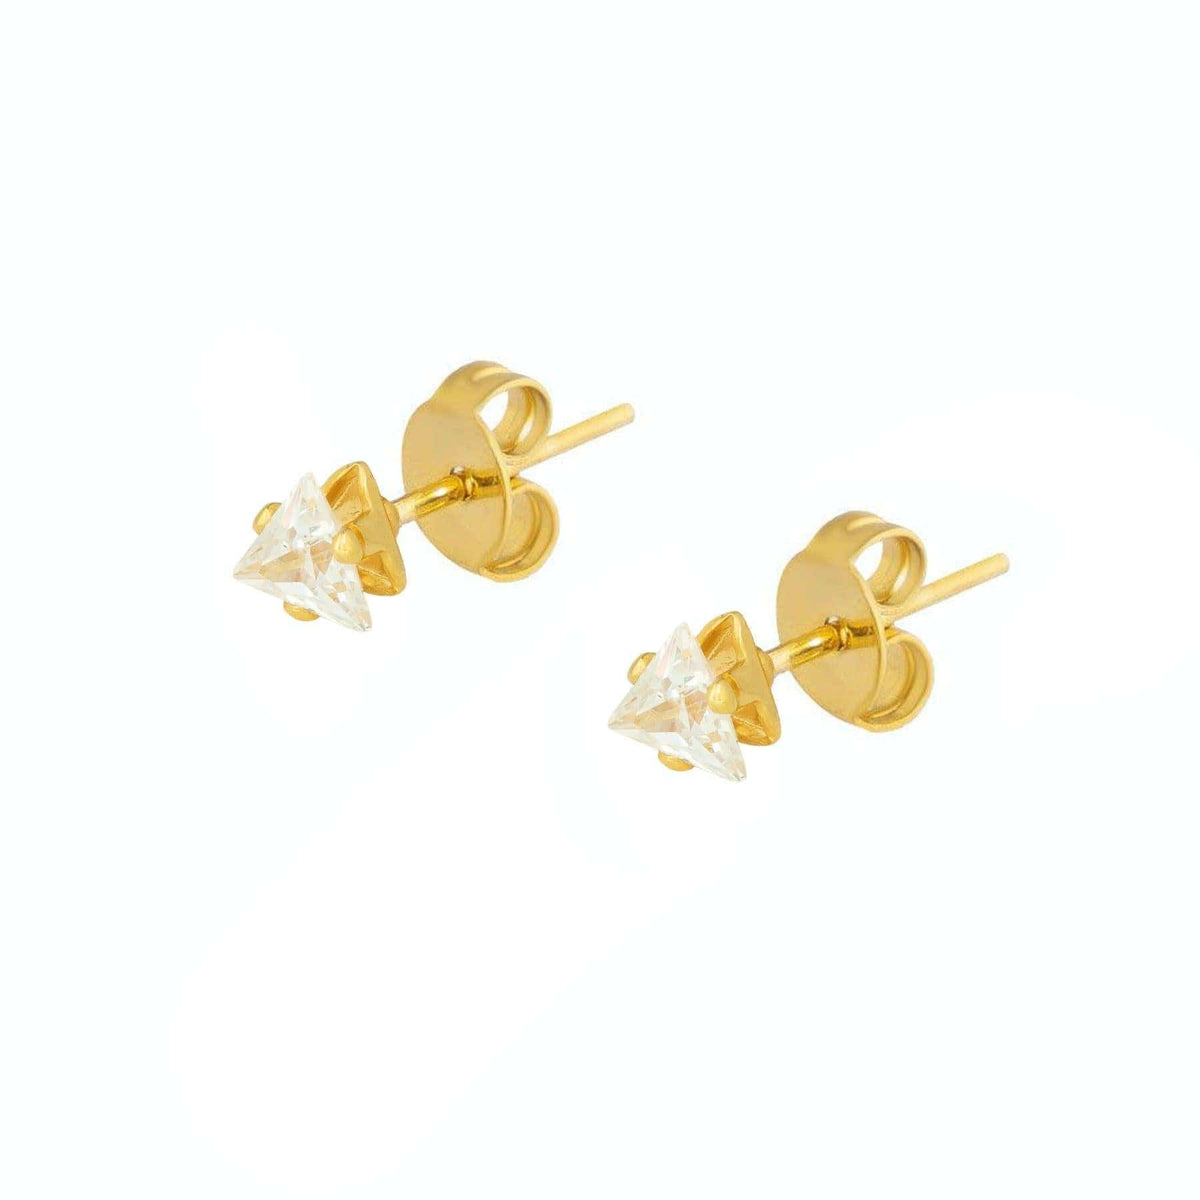 BohoMoon Stainless Steel Kaya Stud Earrings Gold